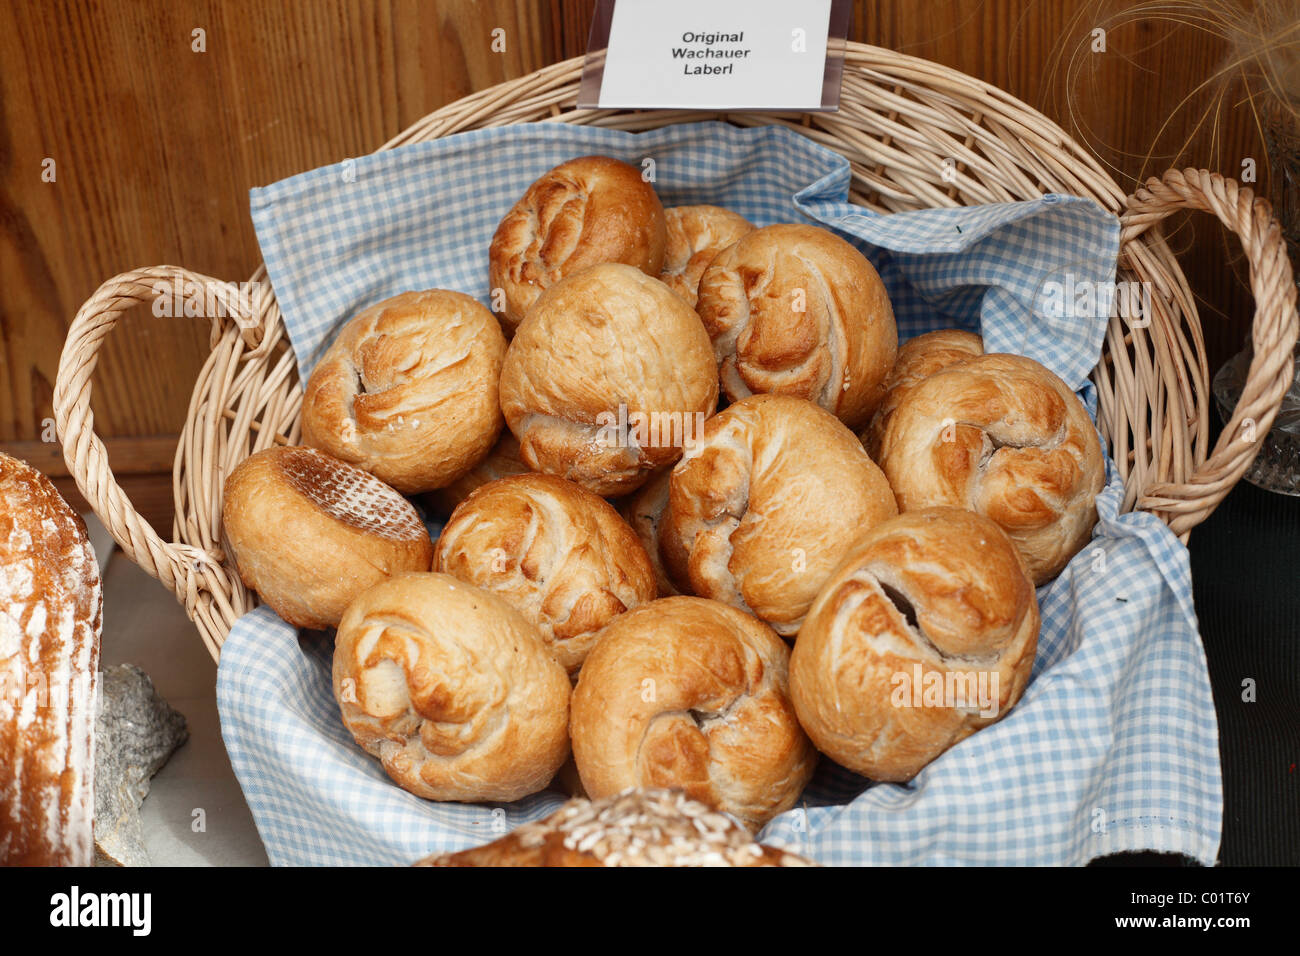 Original Wachauer Laberl, bread buns, Wachau valley, Waldviertel region, Lower Austria, Austria, Europe Stock Photo